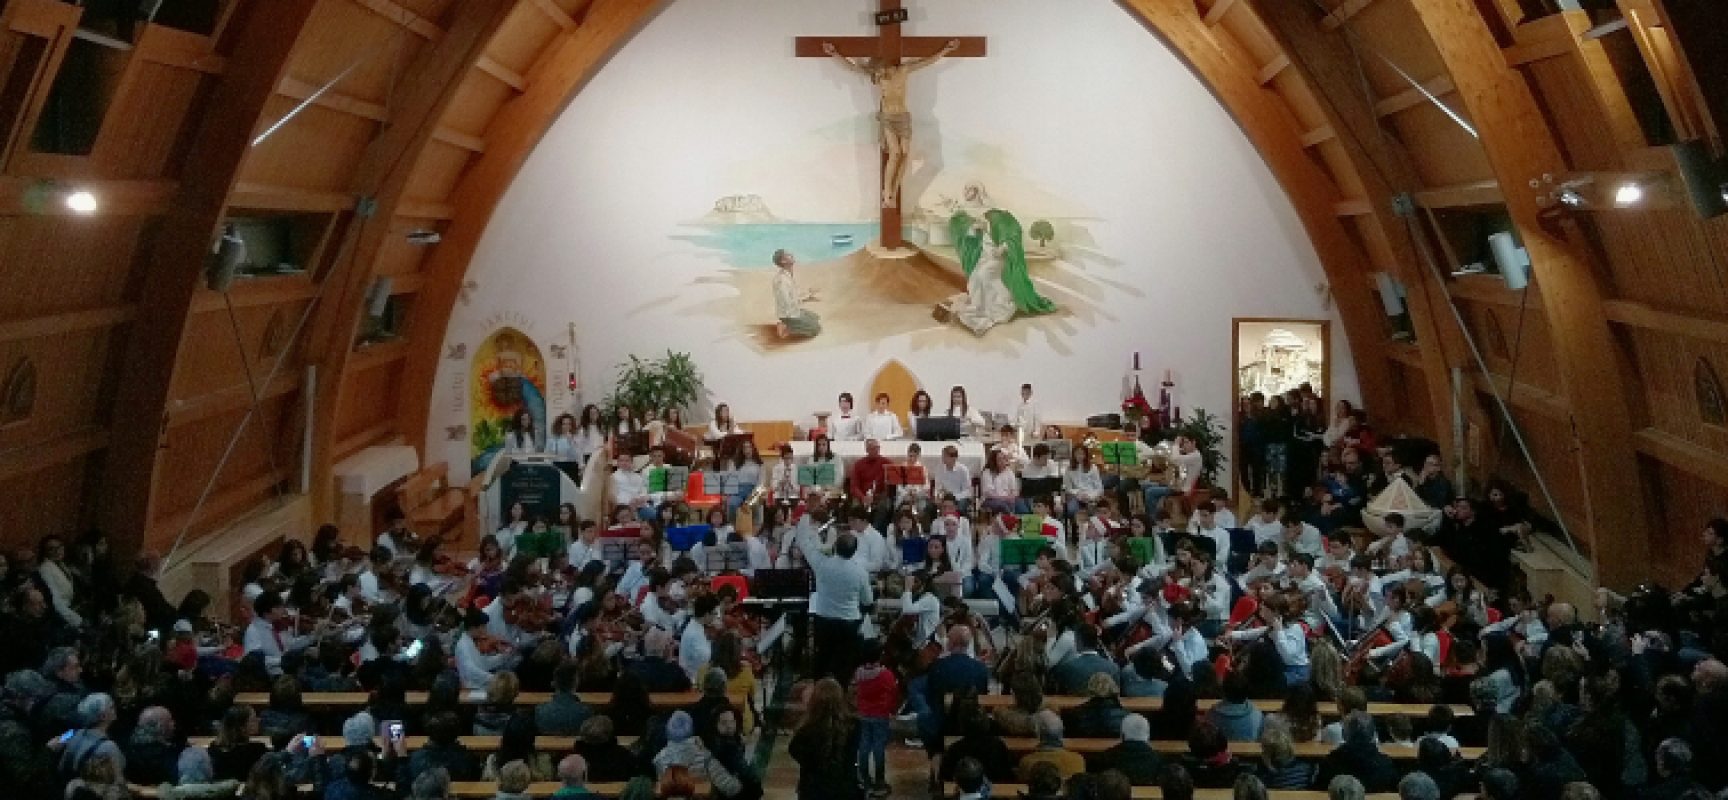 Concerto di Natale, successo per i giovani musicisti della scuola media “Riccardo Monterisi”